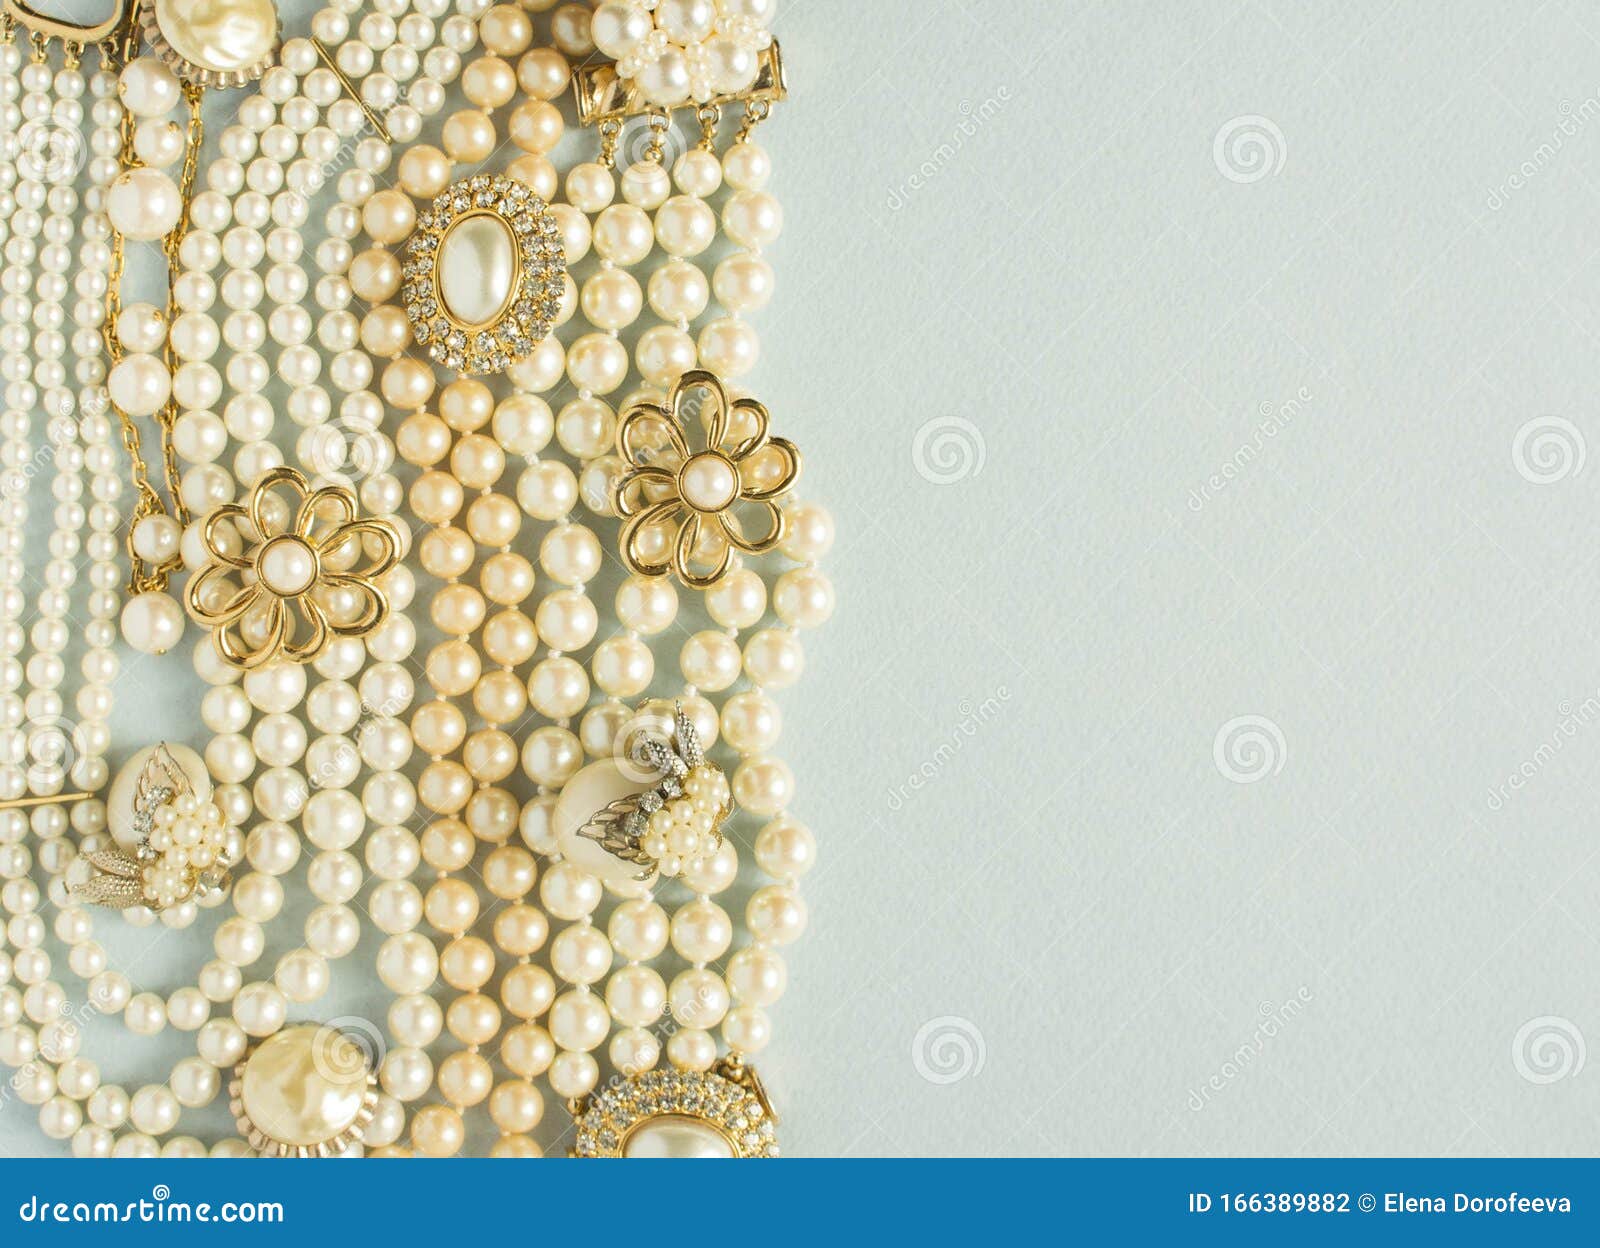 Antecedentes De Las Perlas Joyas De Mujer De Joyas De época Bonito Tono Dorado Y De Perlas, Pulseras, Collar Foto de archivo - Imagen de flor, hoja: 166389882